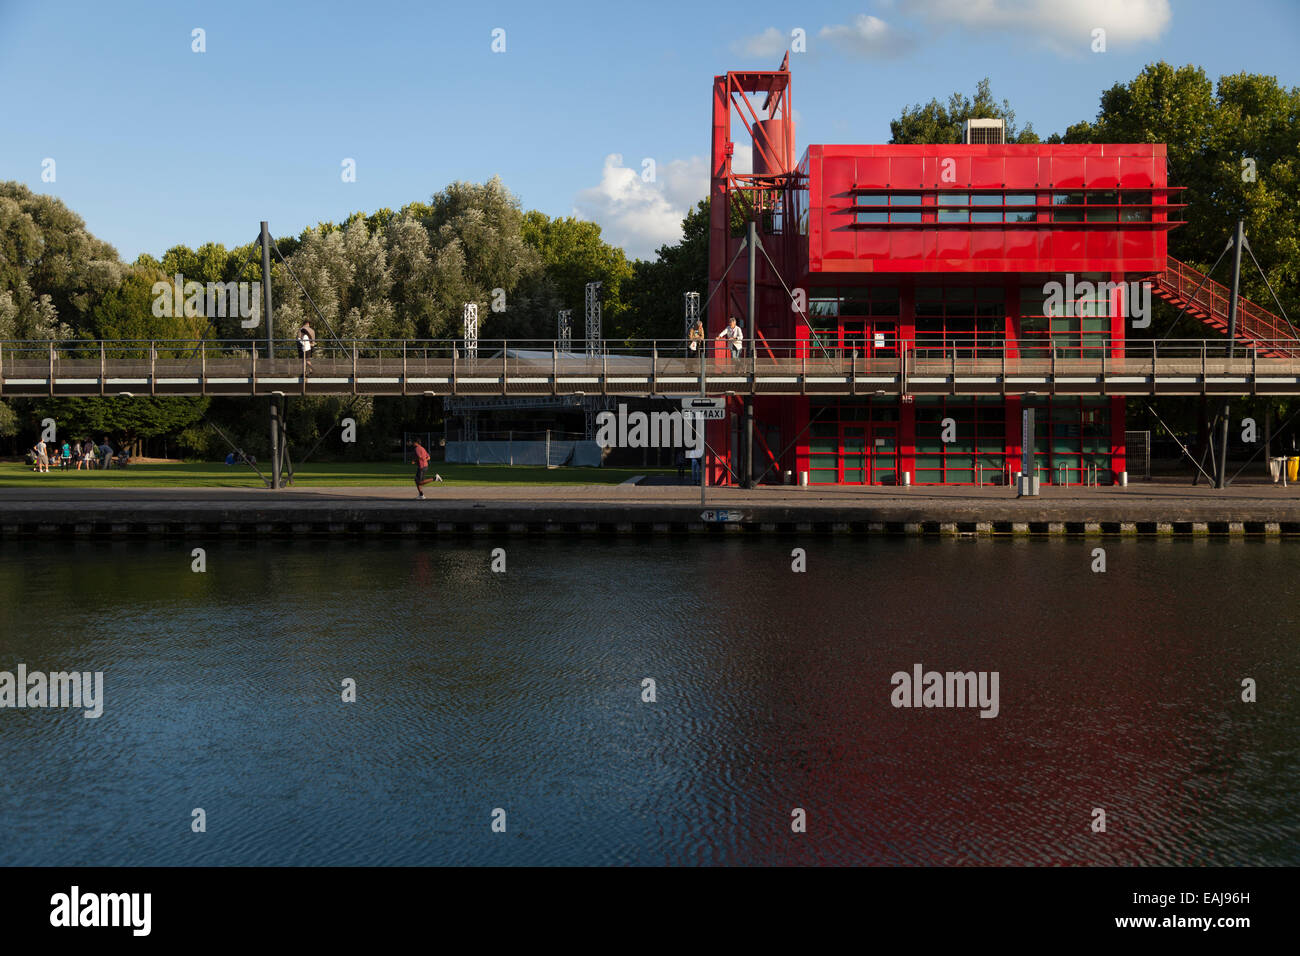 A Bernard Tschumi (architect) building by the Canal de l'Ourcq, Parc de la Villette, Paris, France Stock Photo